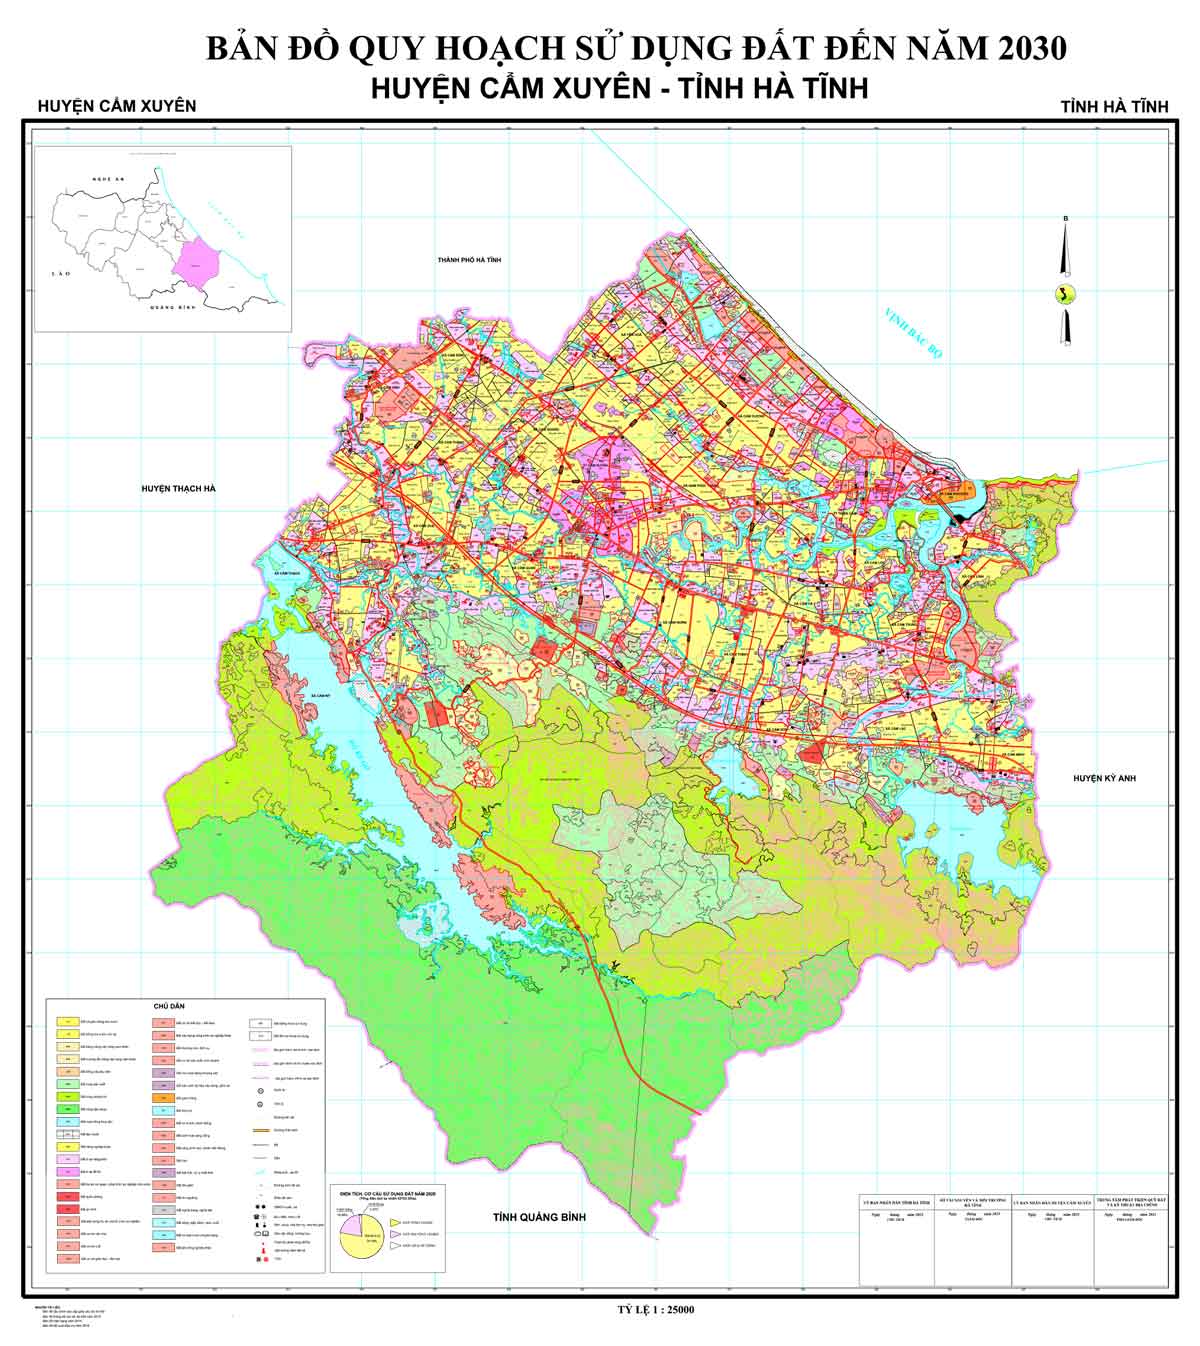 Bản đồ QHSDĐ huyện Cẩm Xuyên đến năm 2030